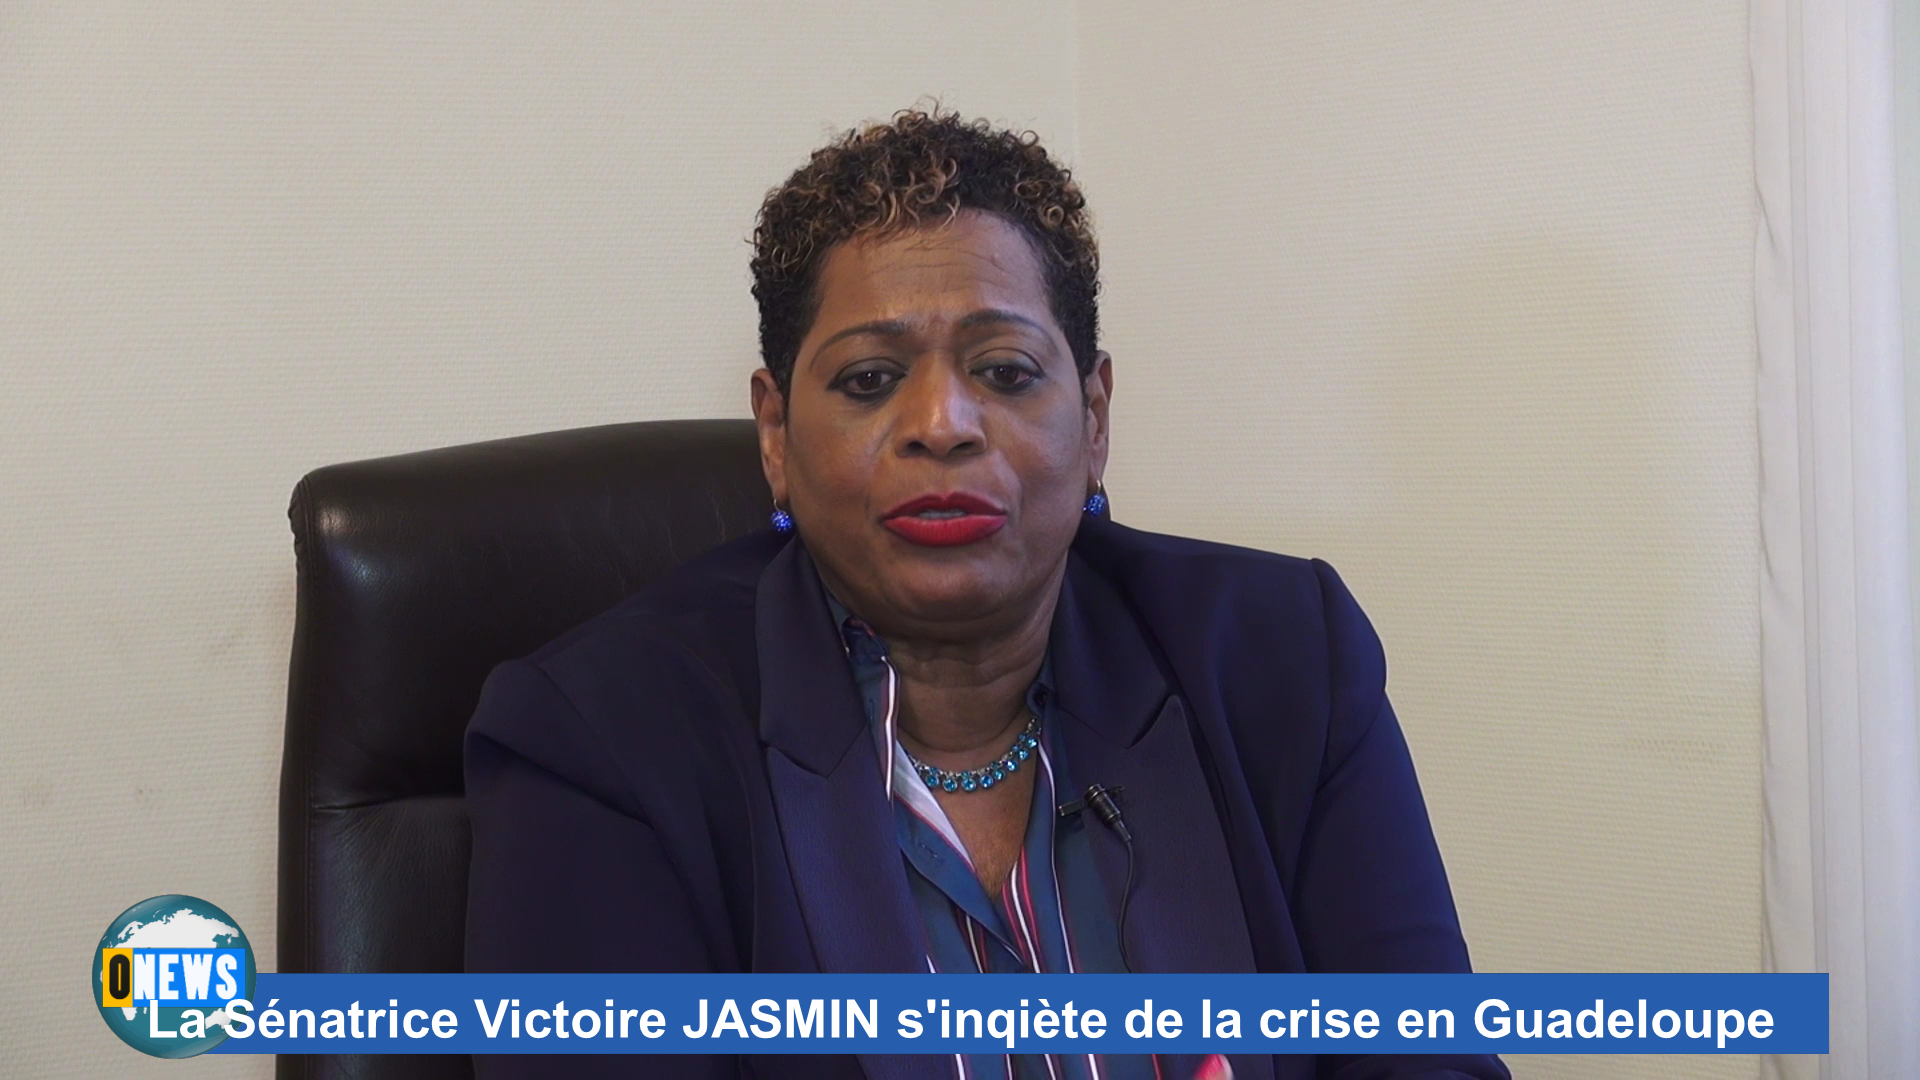 [Vidéo] Guadeloupe Crise. Extrait interview La Sénatrice Victoire JASMIN s’inquiète de la crise en Guadeloupe